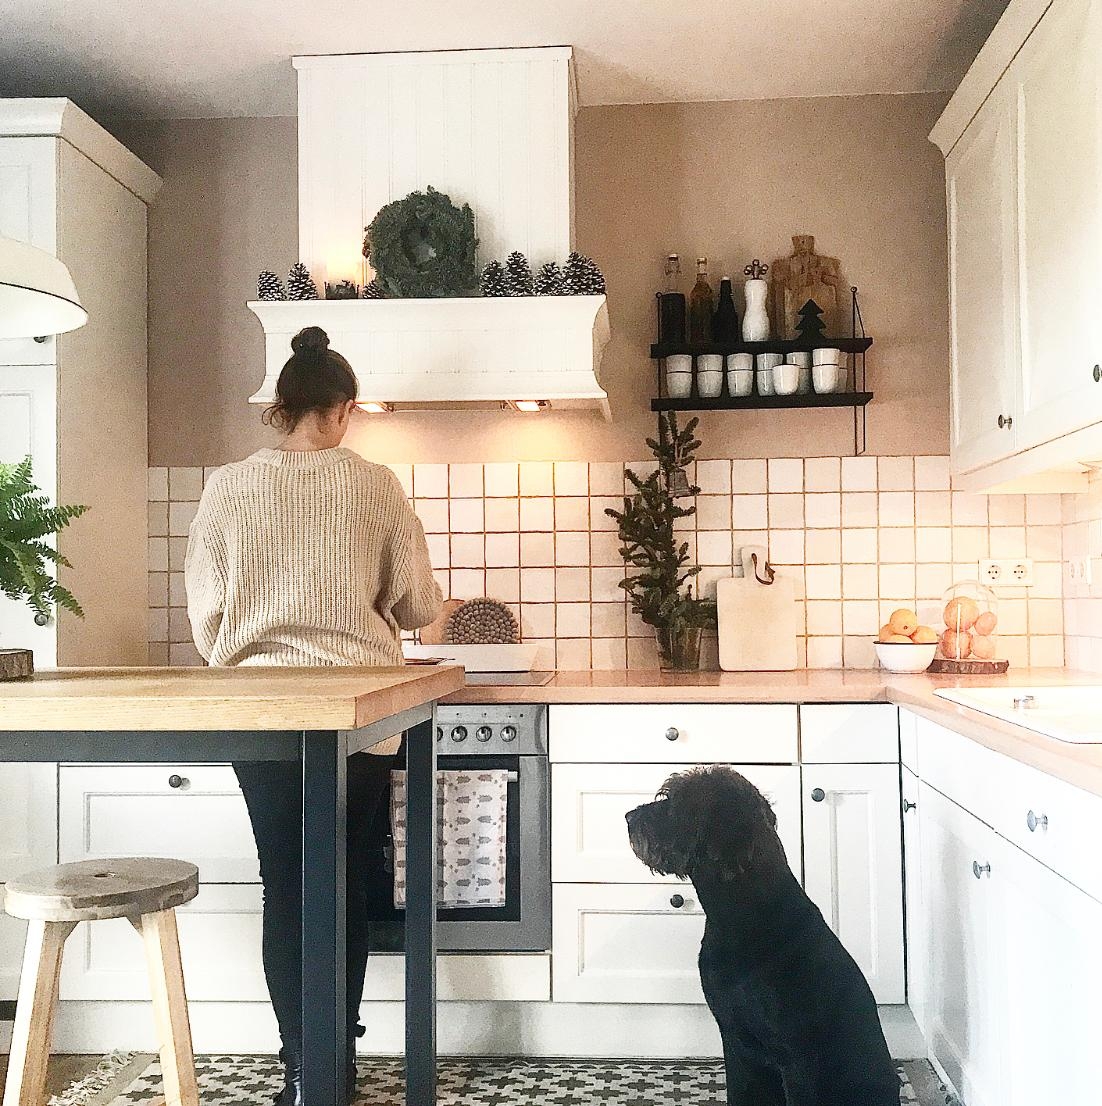 Beim Kochen immer unter Beobachtung 🐶 #küche #kochen #lebenmithund